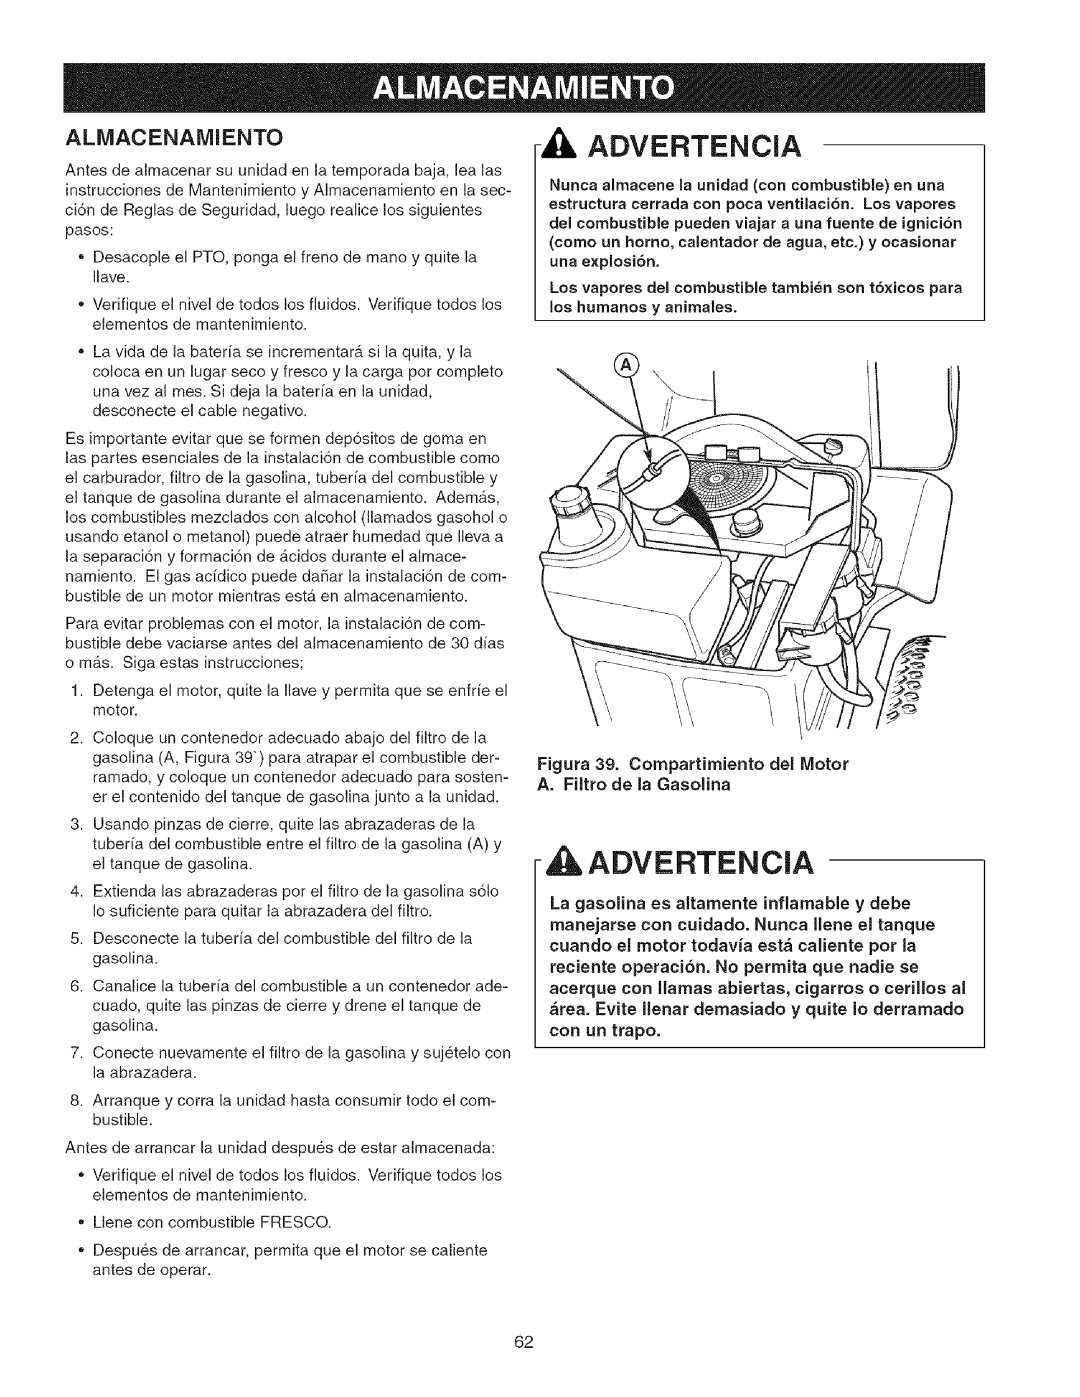 Craftsman 107.2777 manual Advertencia, Almacenamiento, Figura 39. Compartimiento del Motor, A.Filtro de la Gasolina 